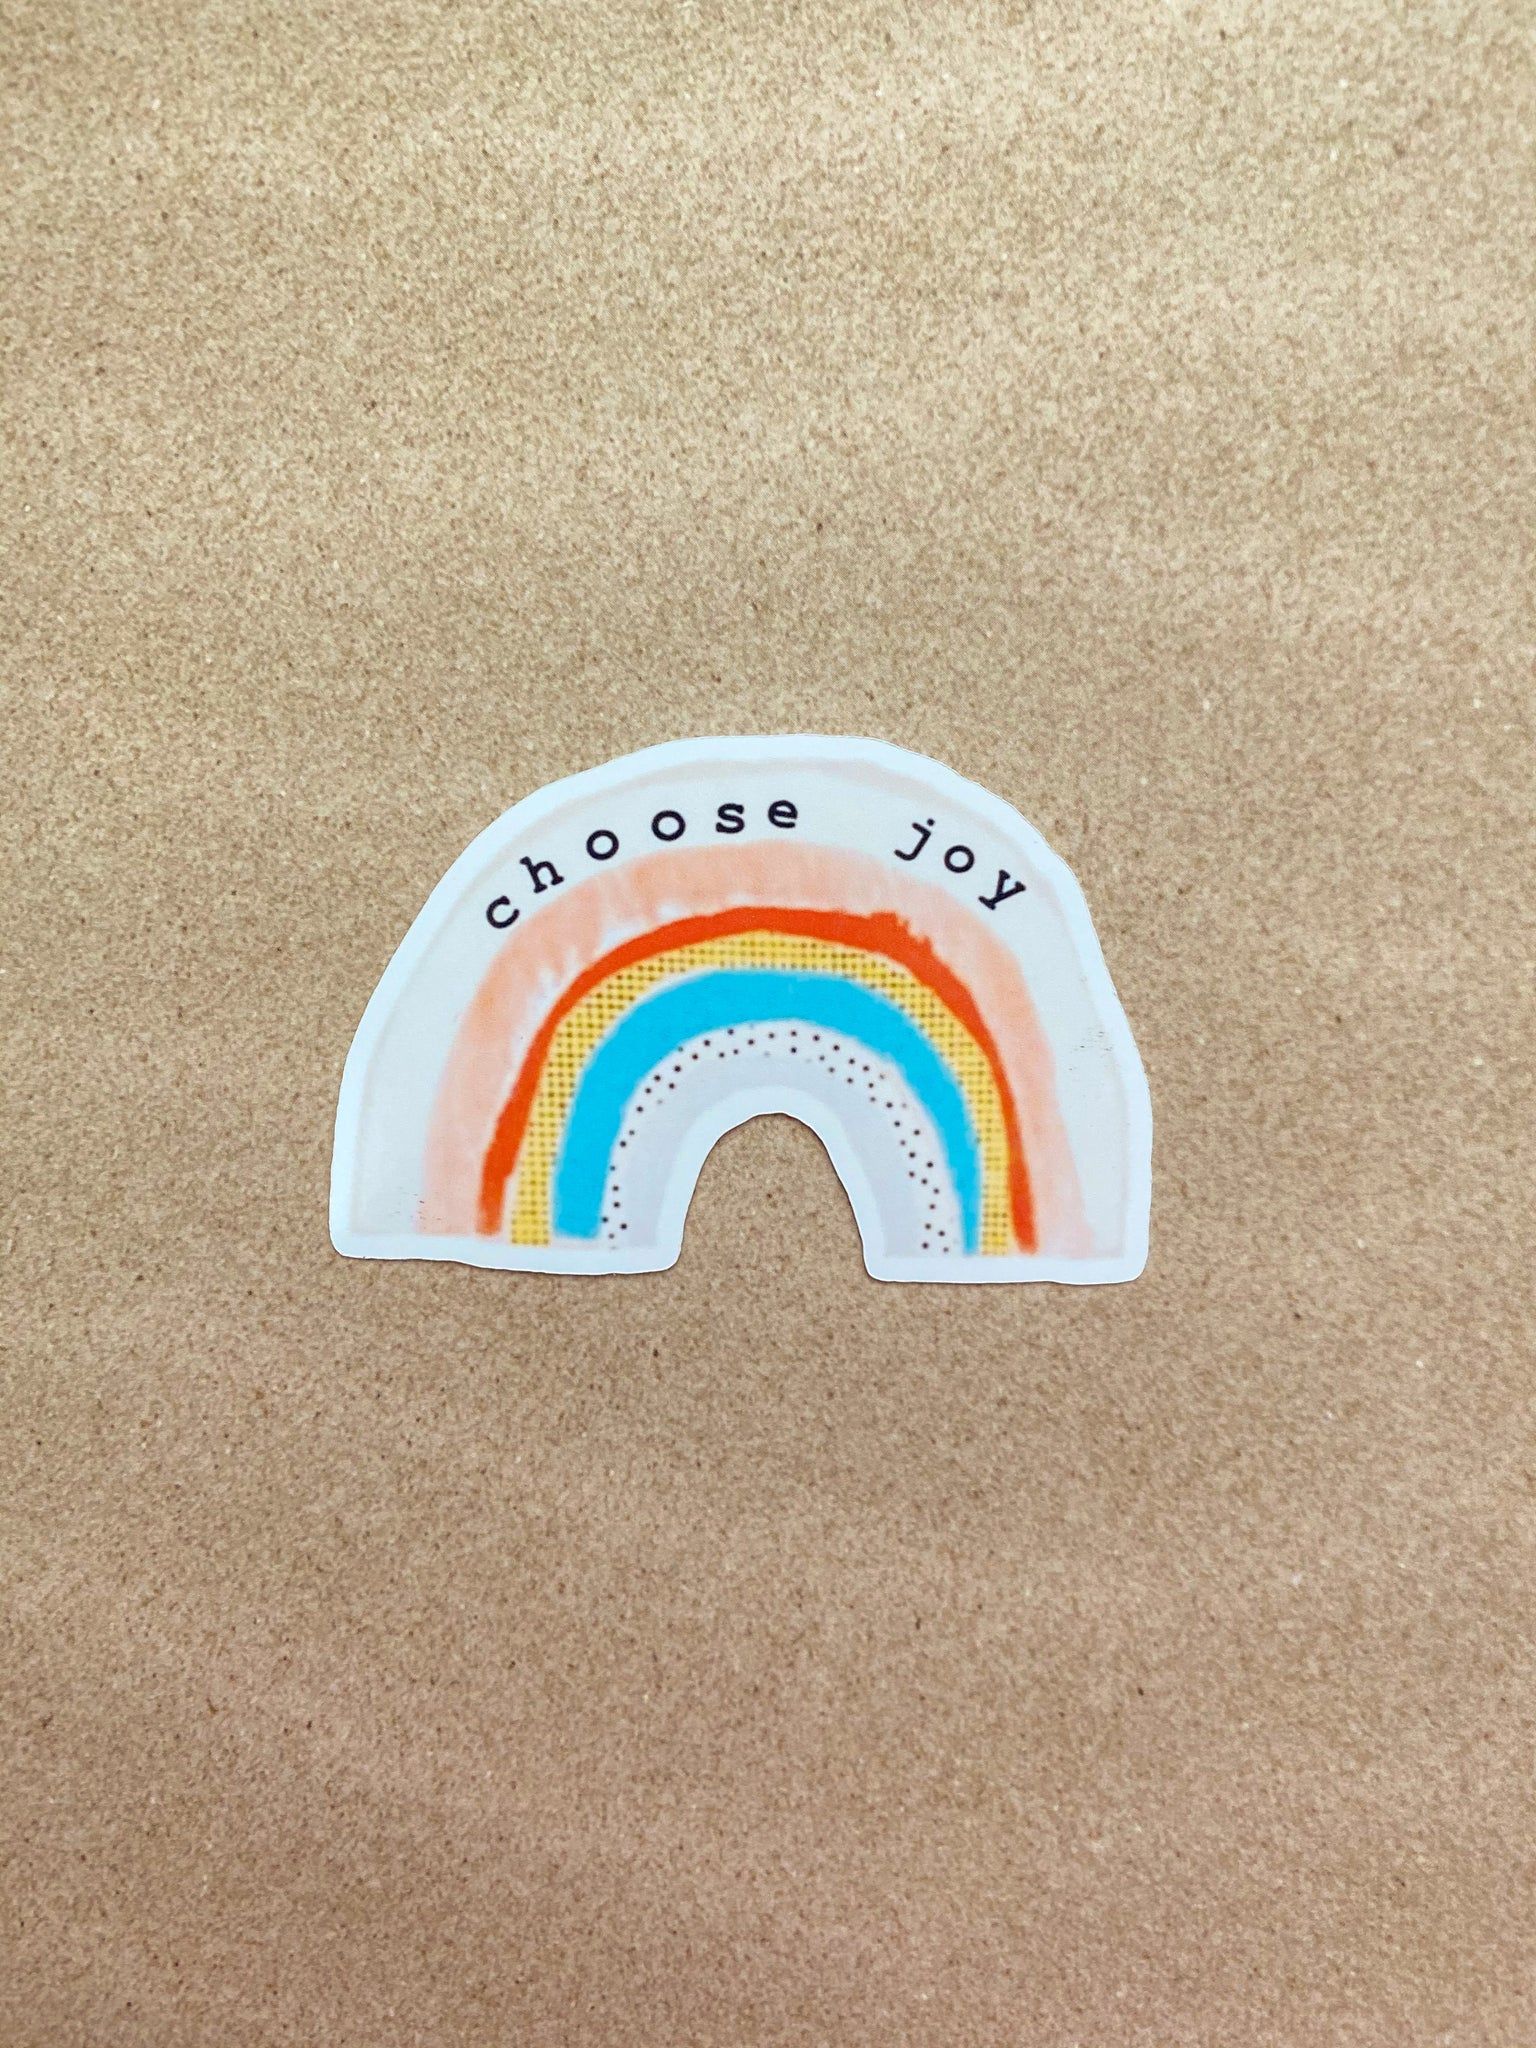 A sticker that says choose joy - Positivity